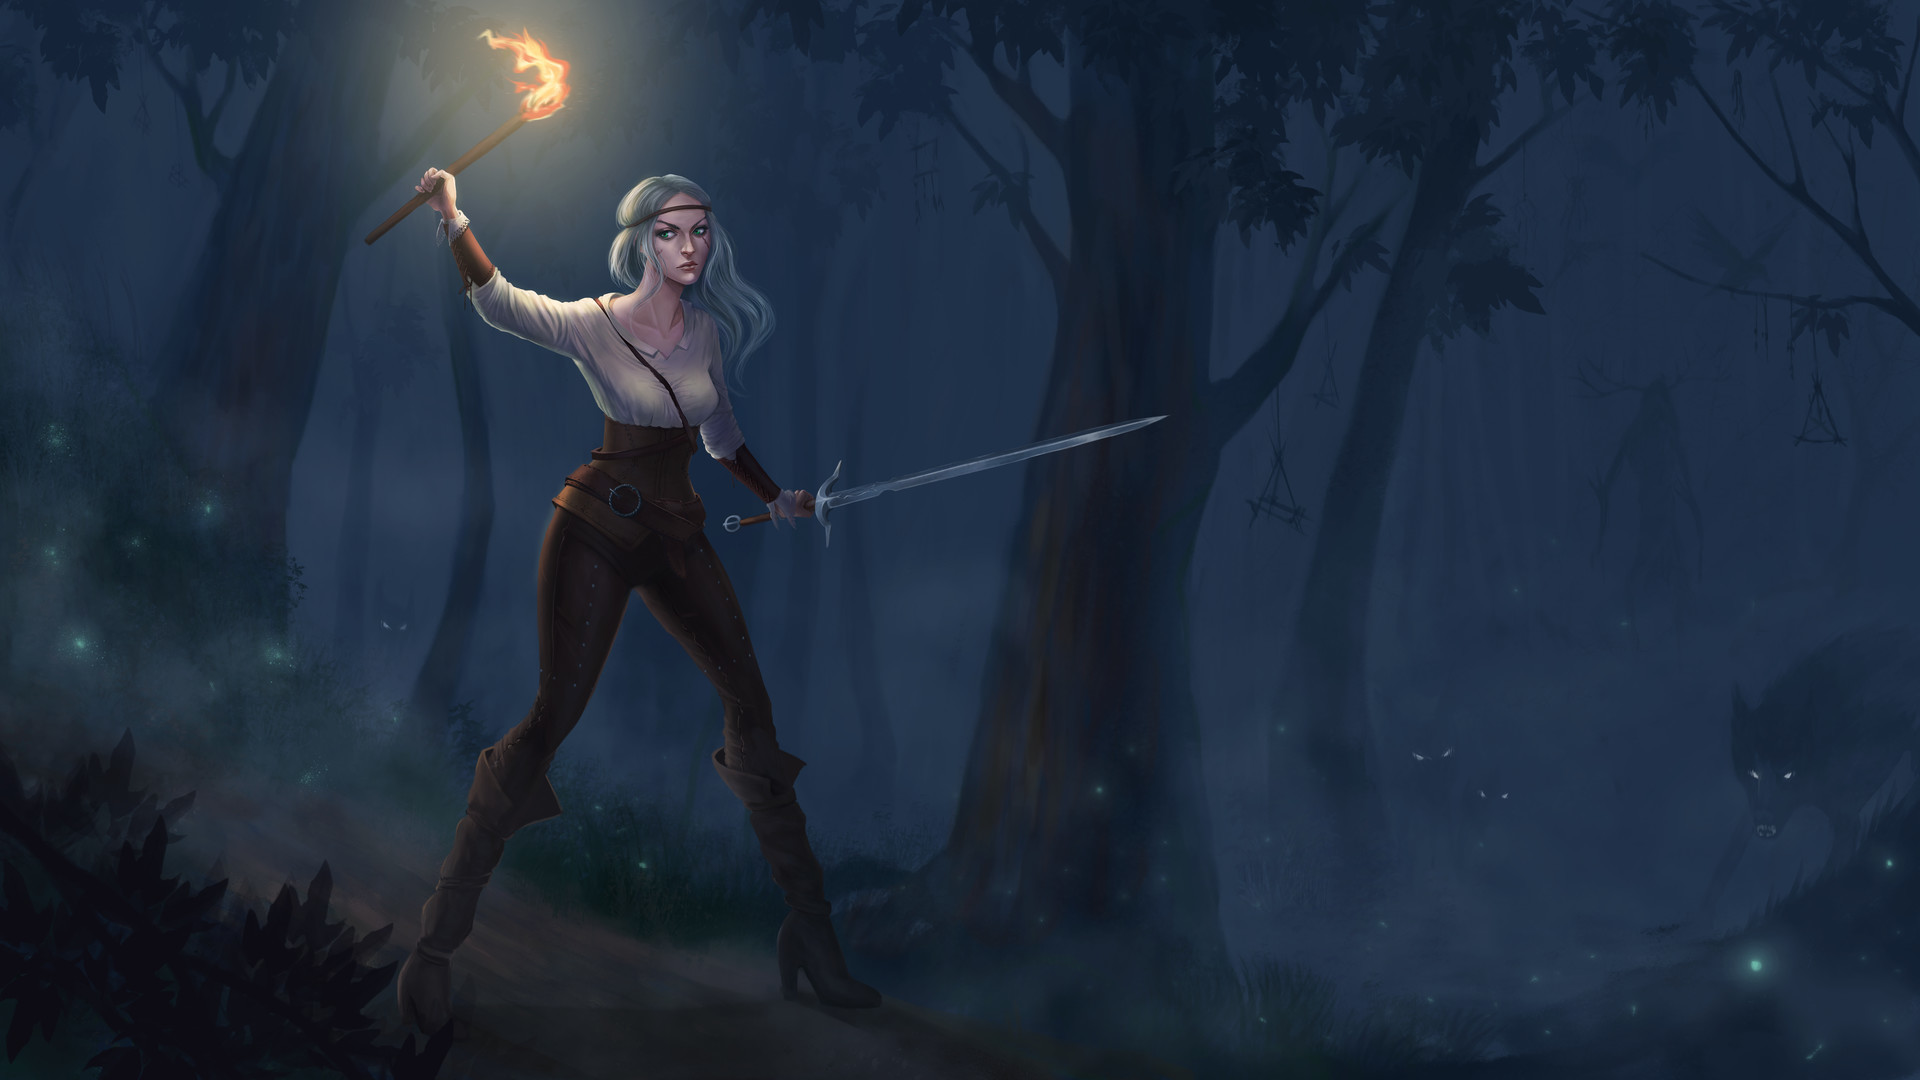 Wallpaper The witcher 3: wild hunt, video game, dark, forest, ciri, girl warrior, art